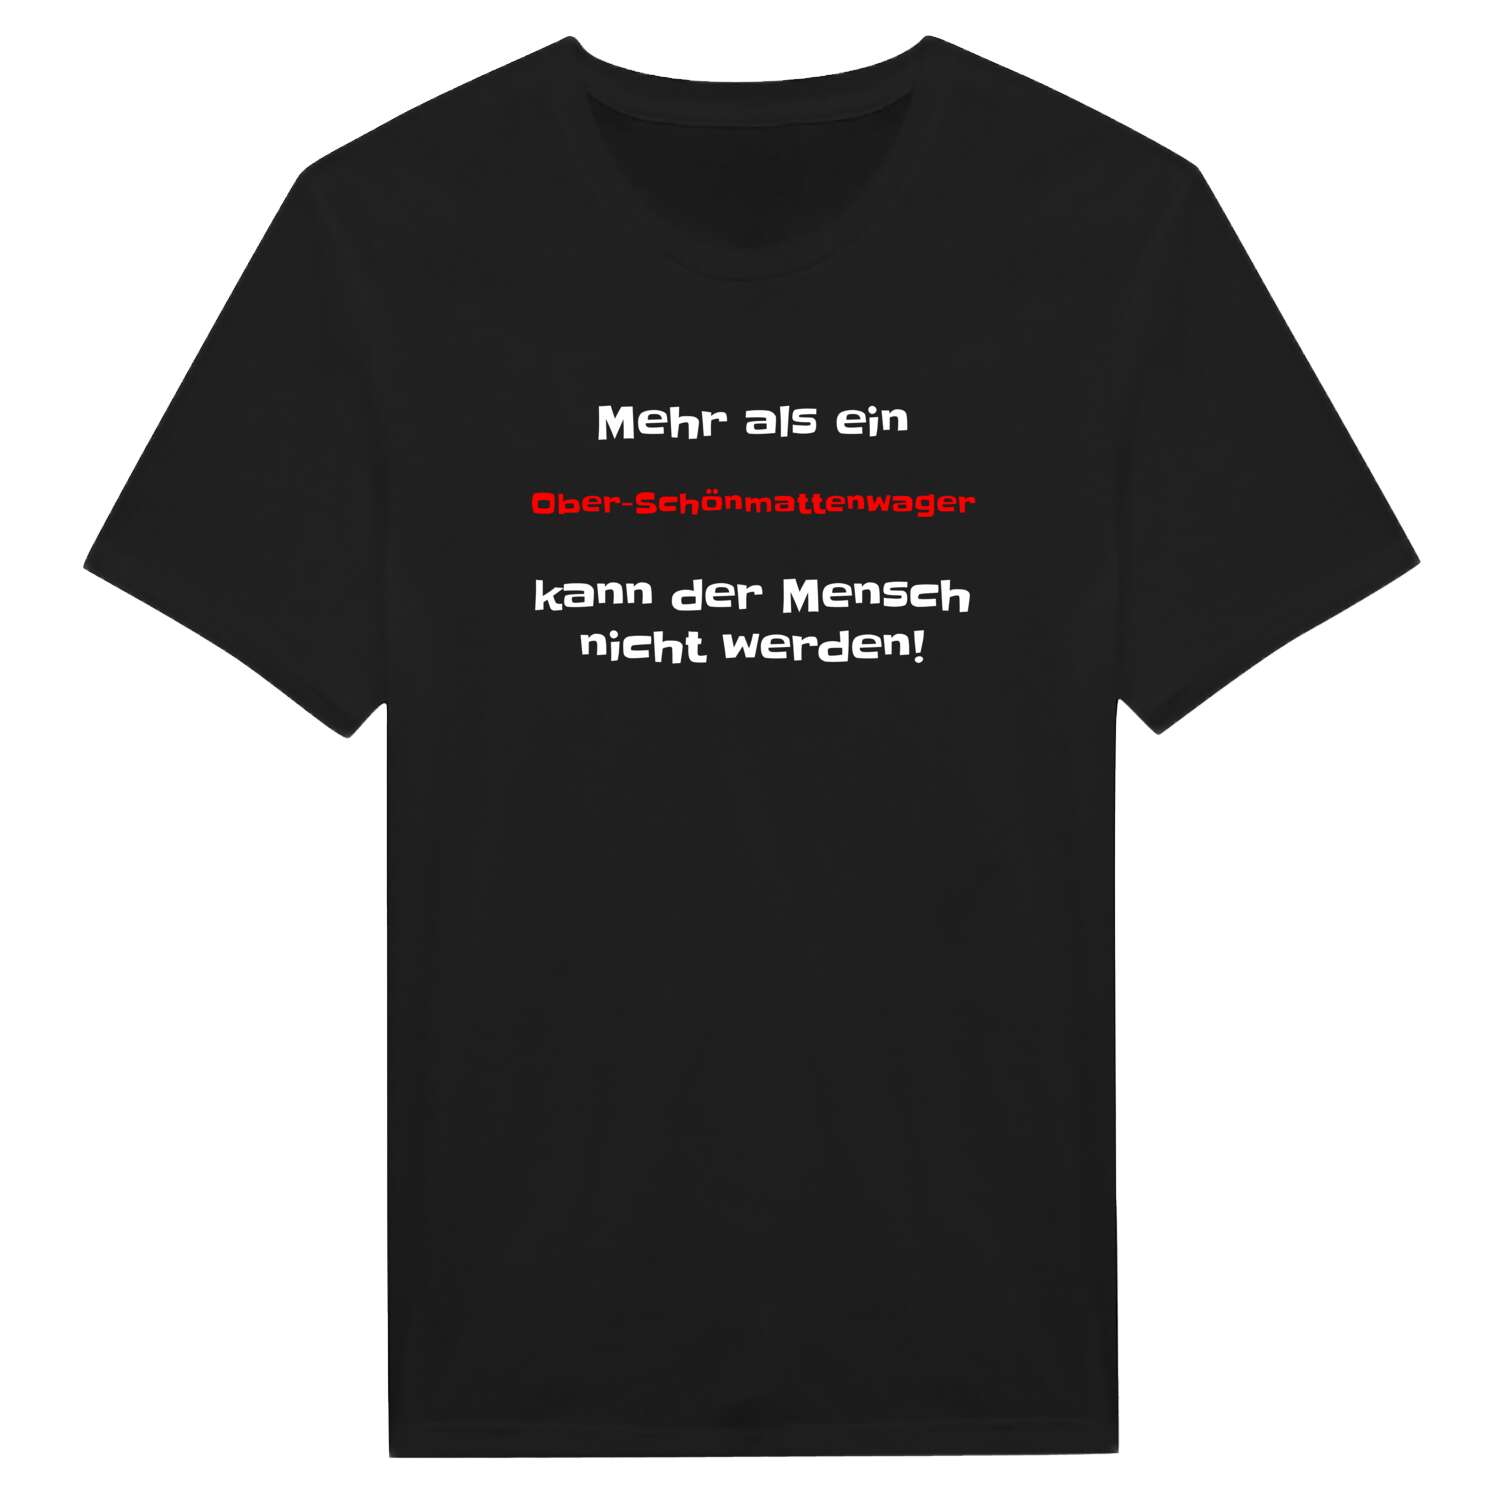 Ober-Schönmattenwag T-Shirt »Mehr als ein«